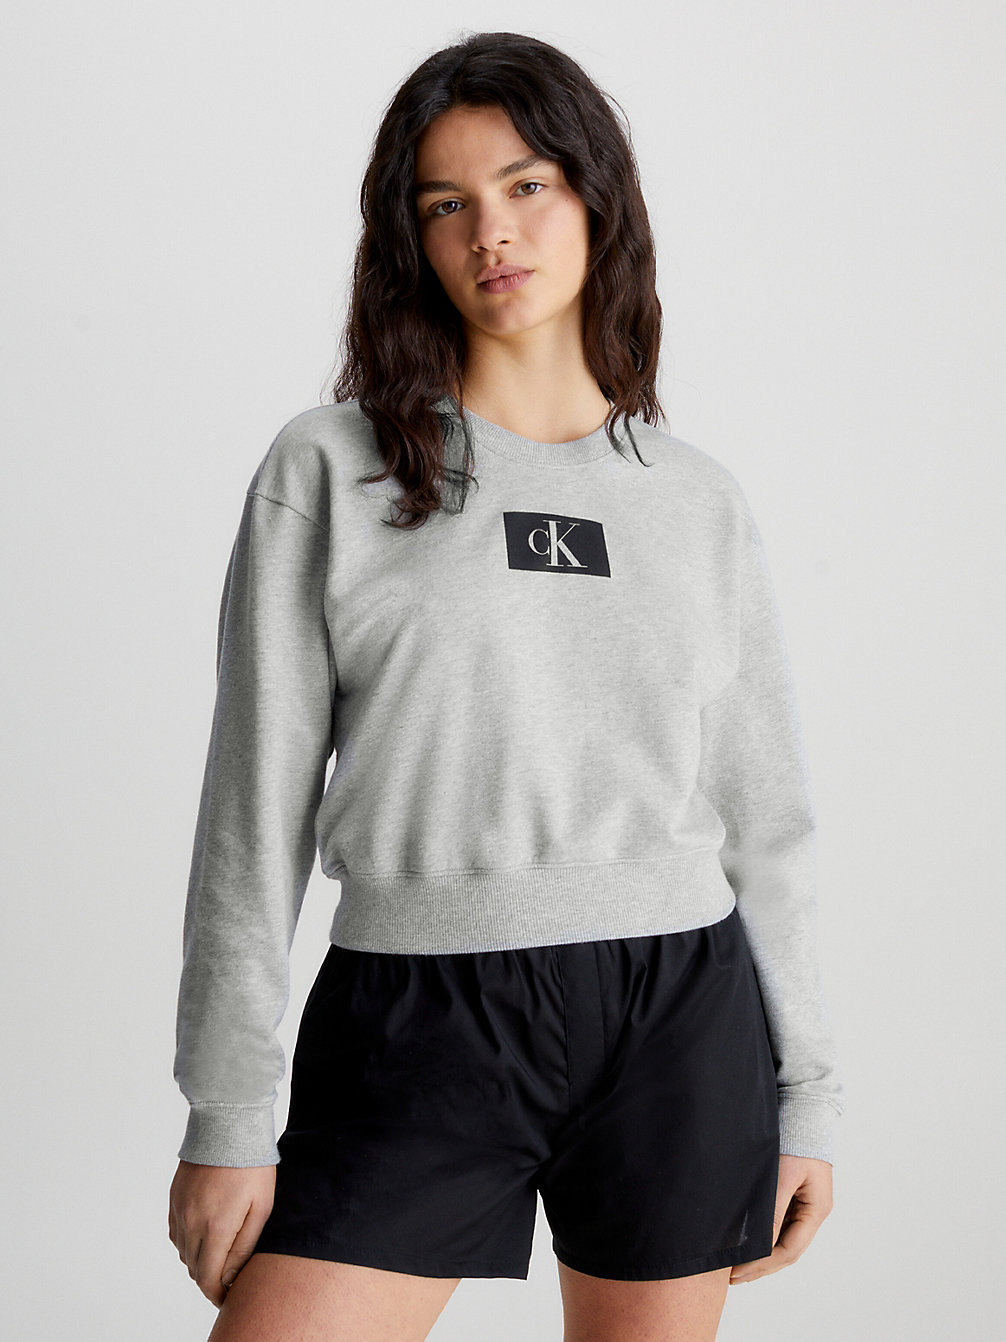 GREY HEATHER Lounge-Sweatshirt - Ck96 undefined Damen Calvin Klein